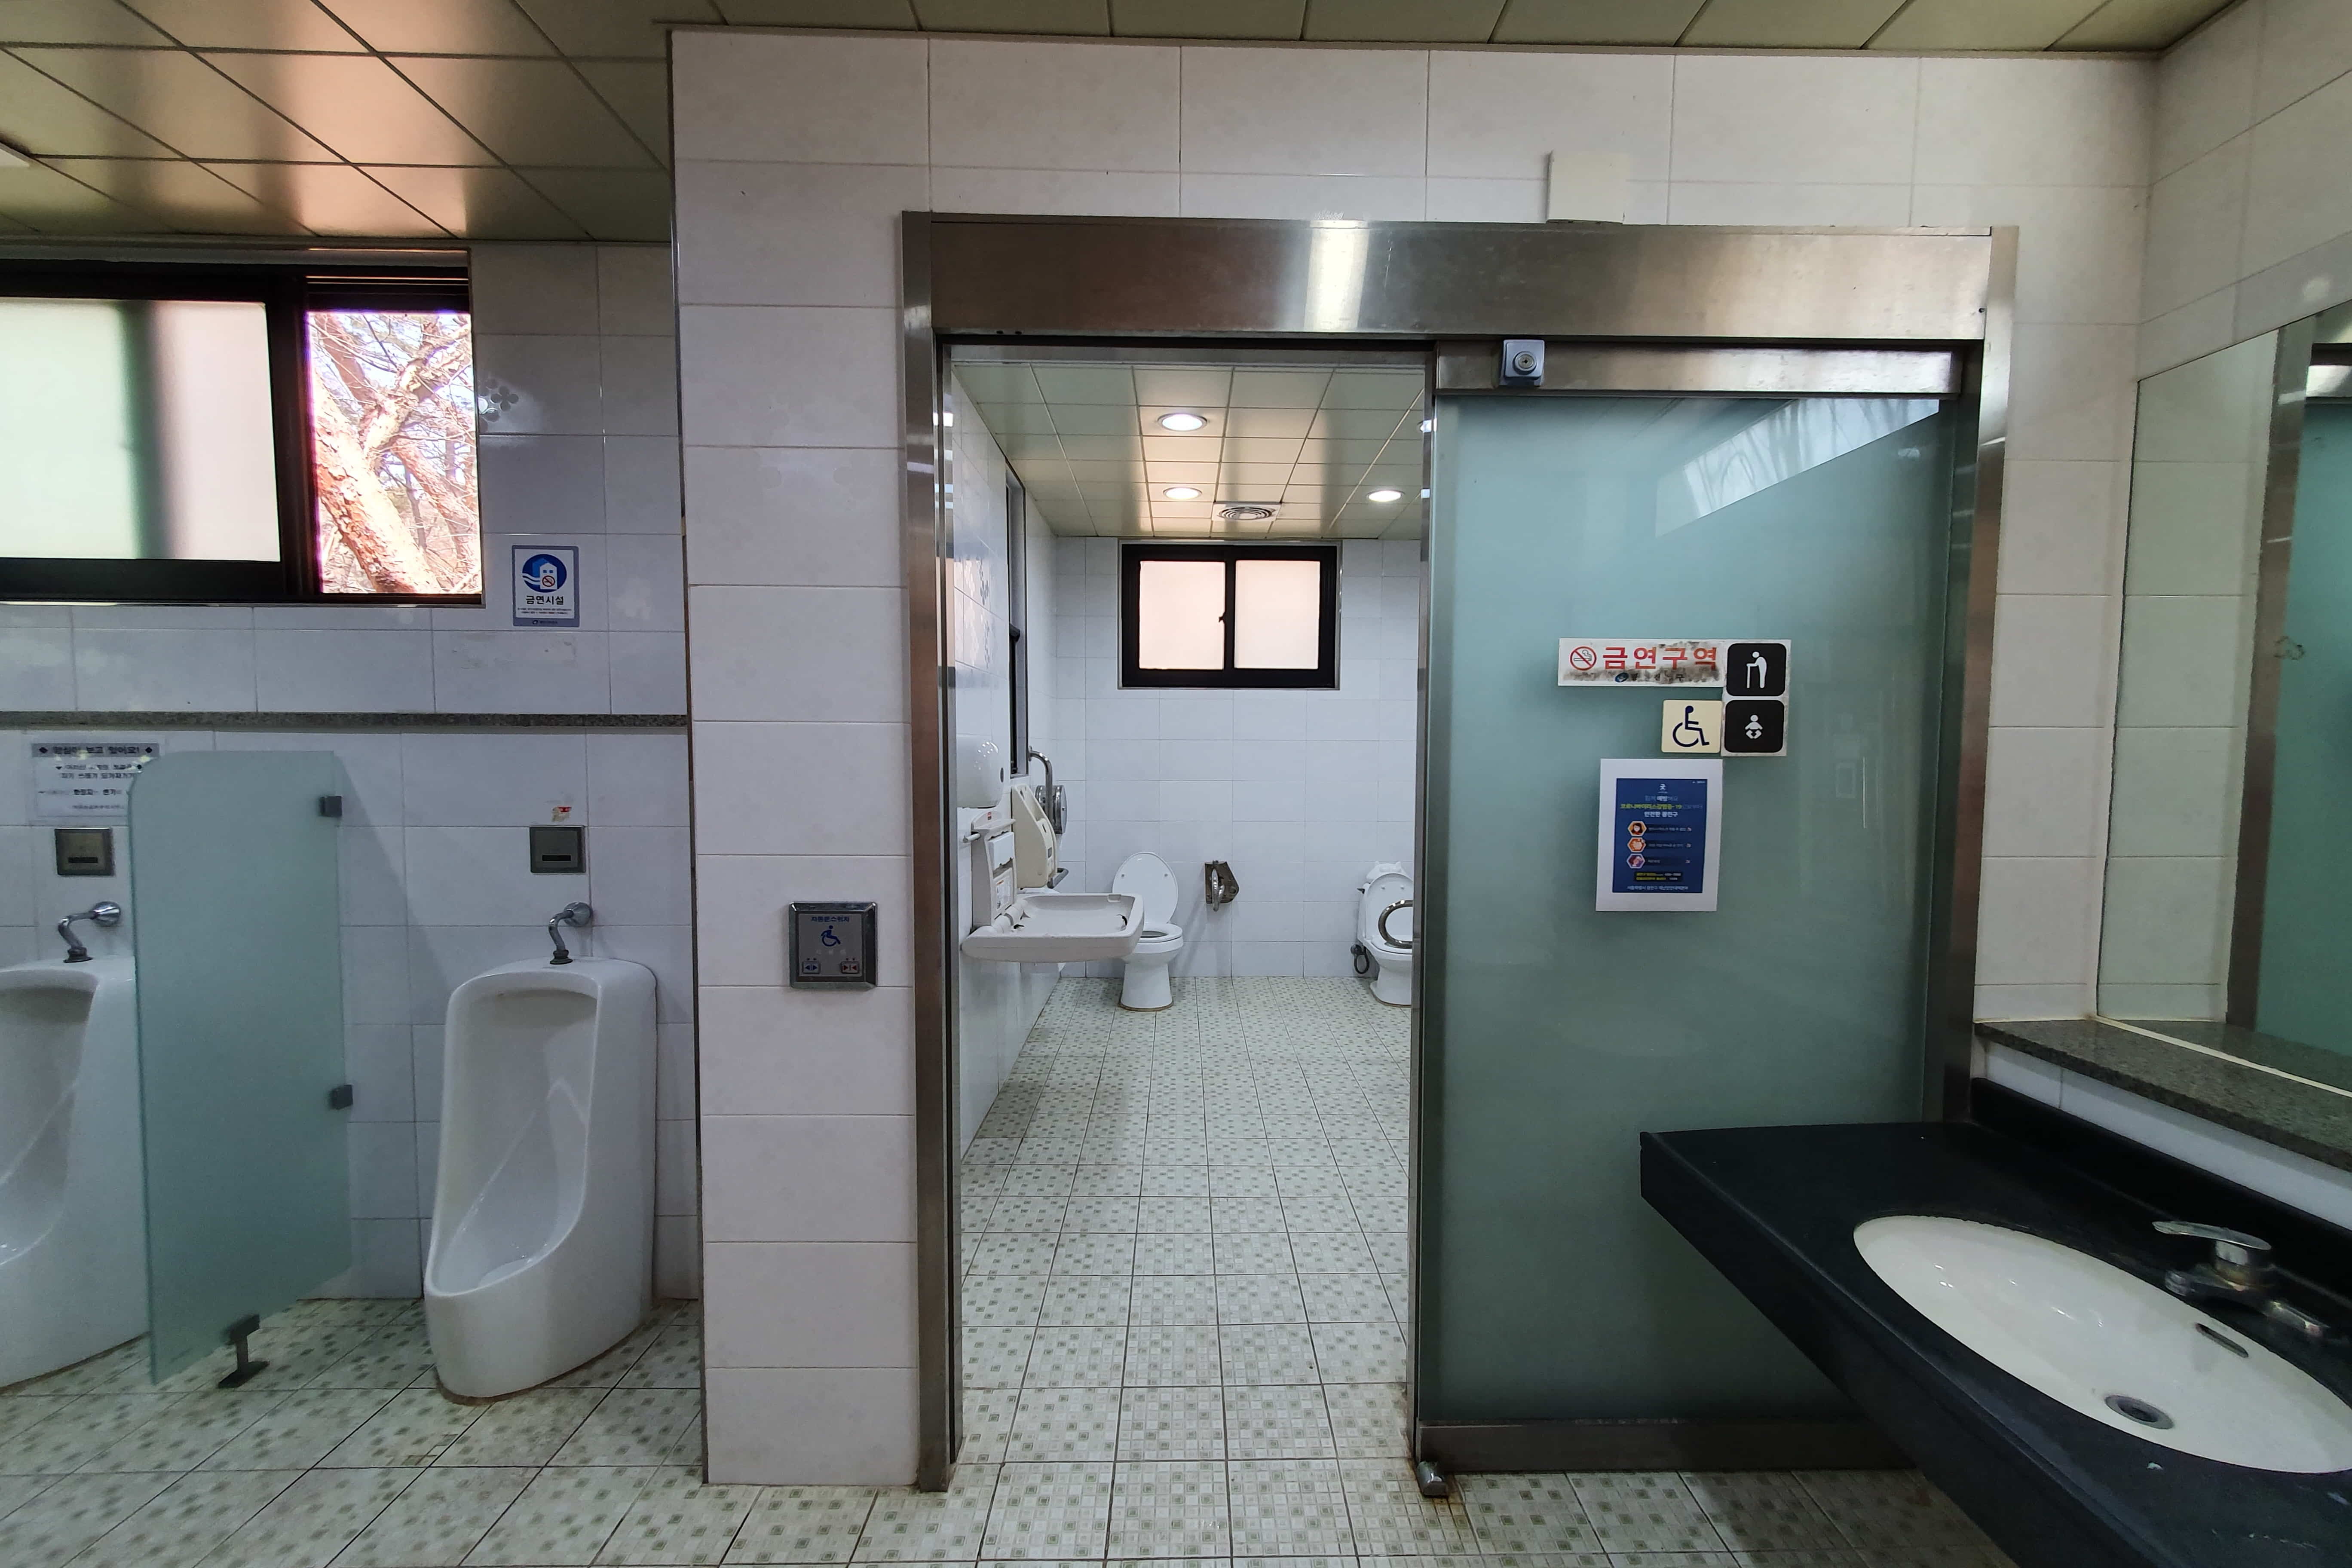 장애인 화장실1 : 아차산 무장애 숲길 장애인 화장실 사진이다.